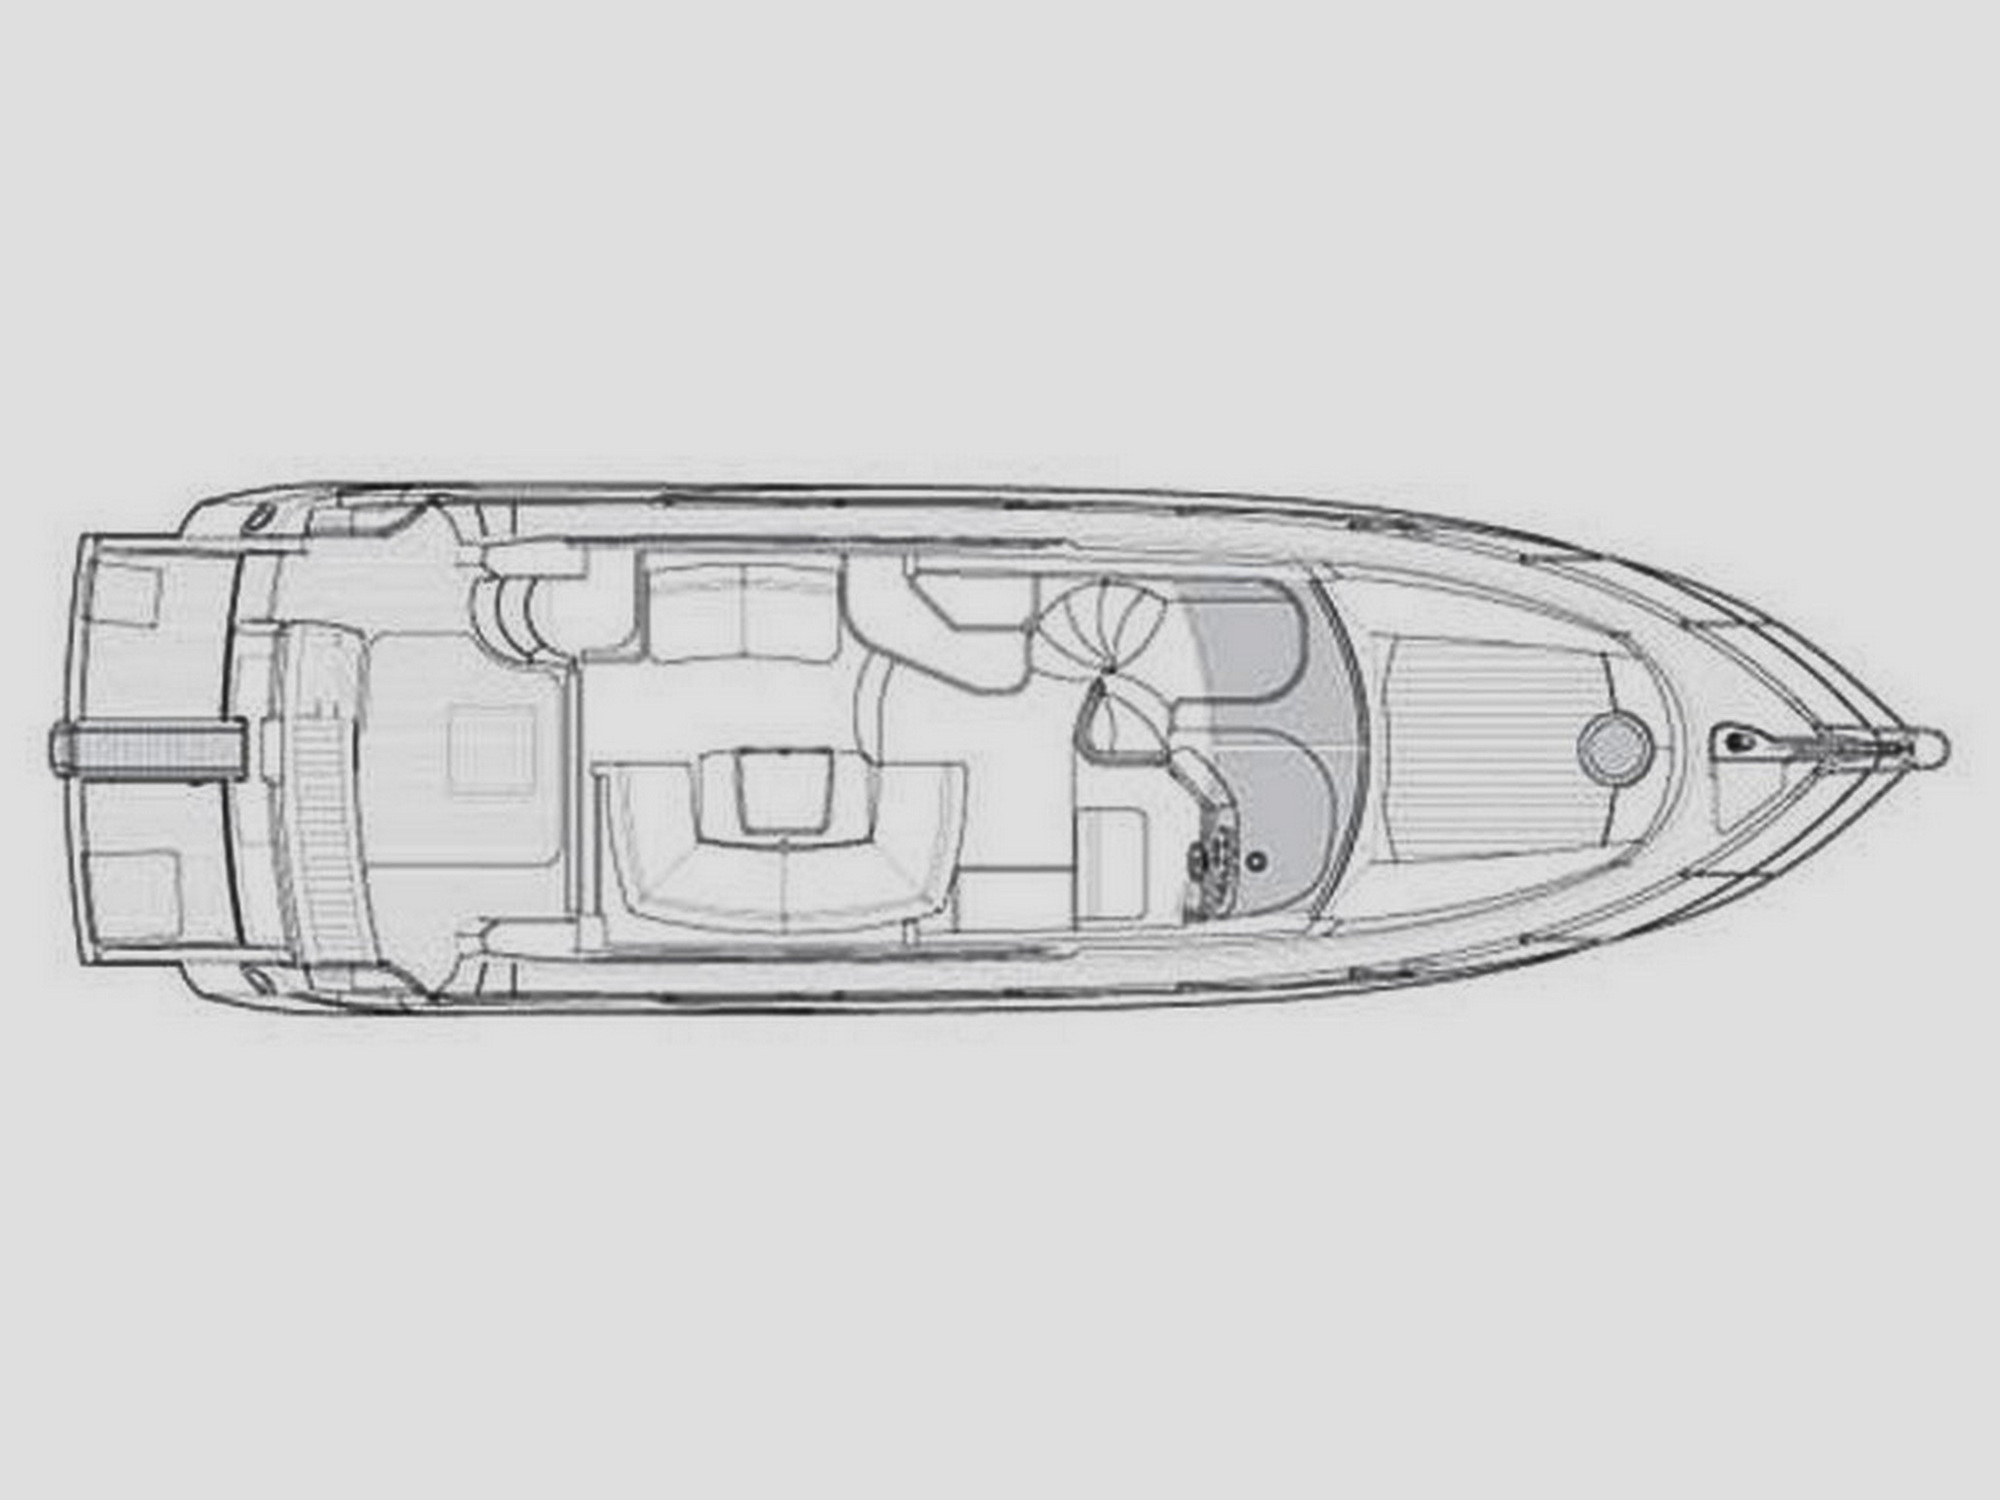 Drettmann Yachts - Sunseeker 50 Manhatten